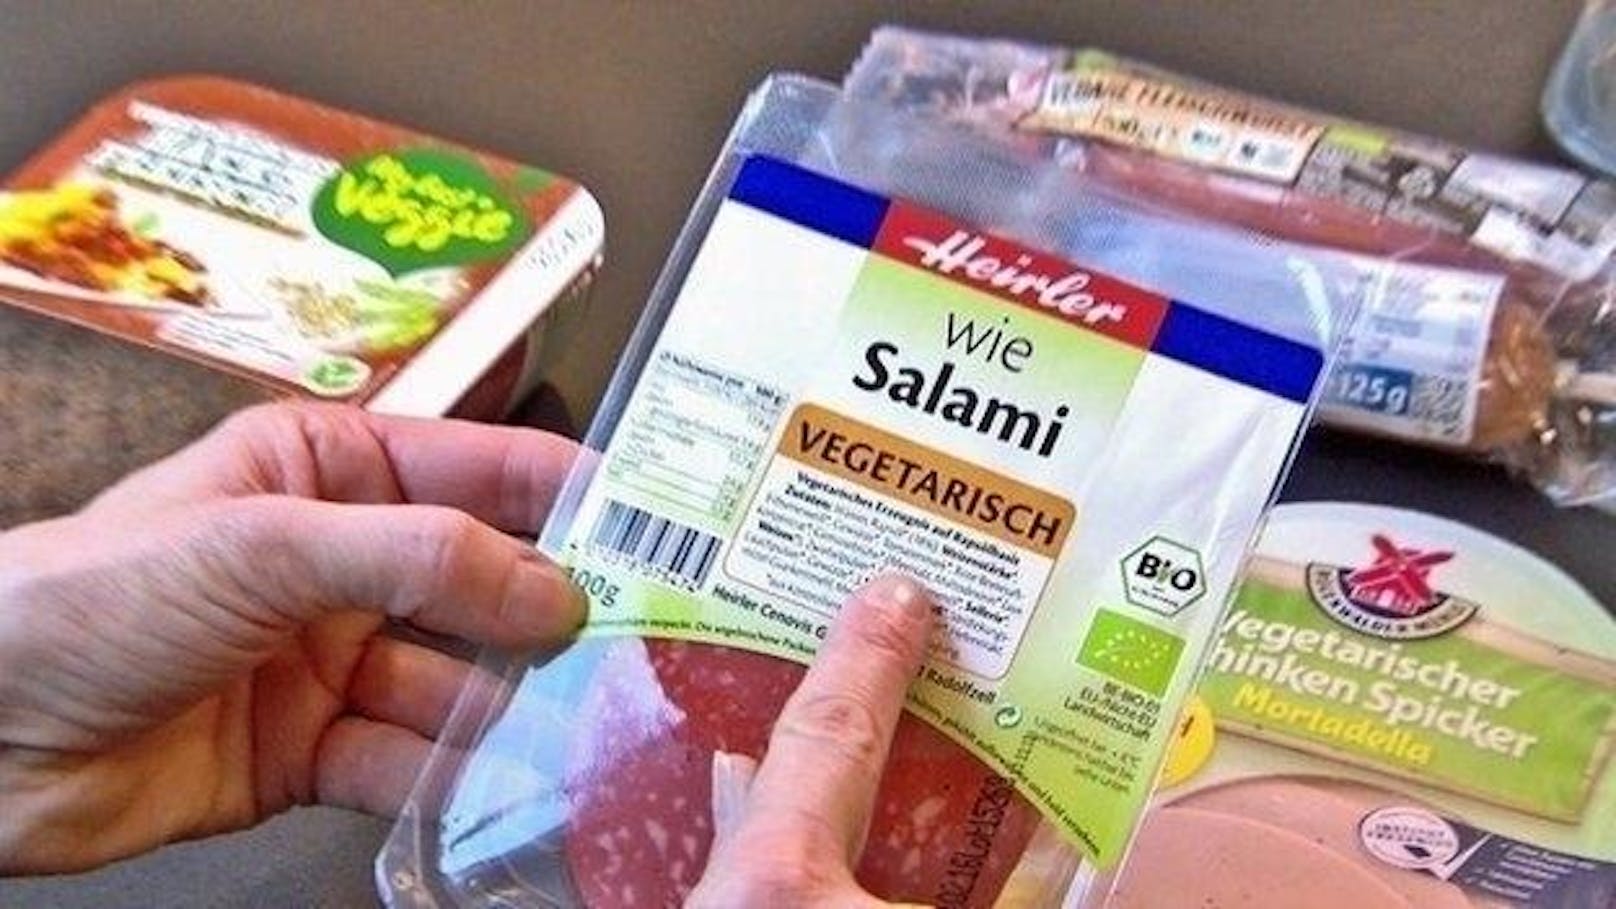 Das salzigste Produkt im "Öko-Test"-Test war die "Vegetarische Bio-Salami" von Heirler mit einem Wert von 3,2 Gramm.